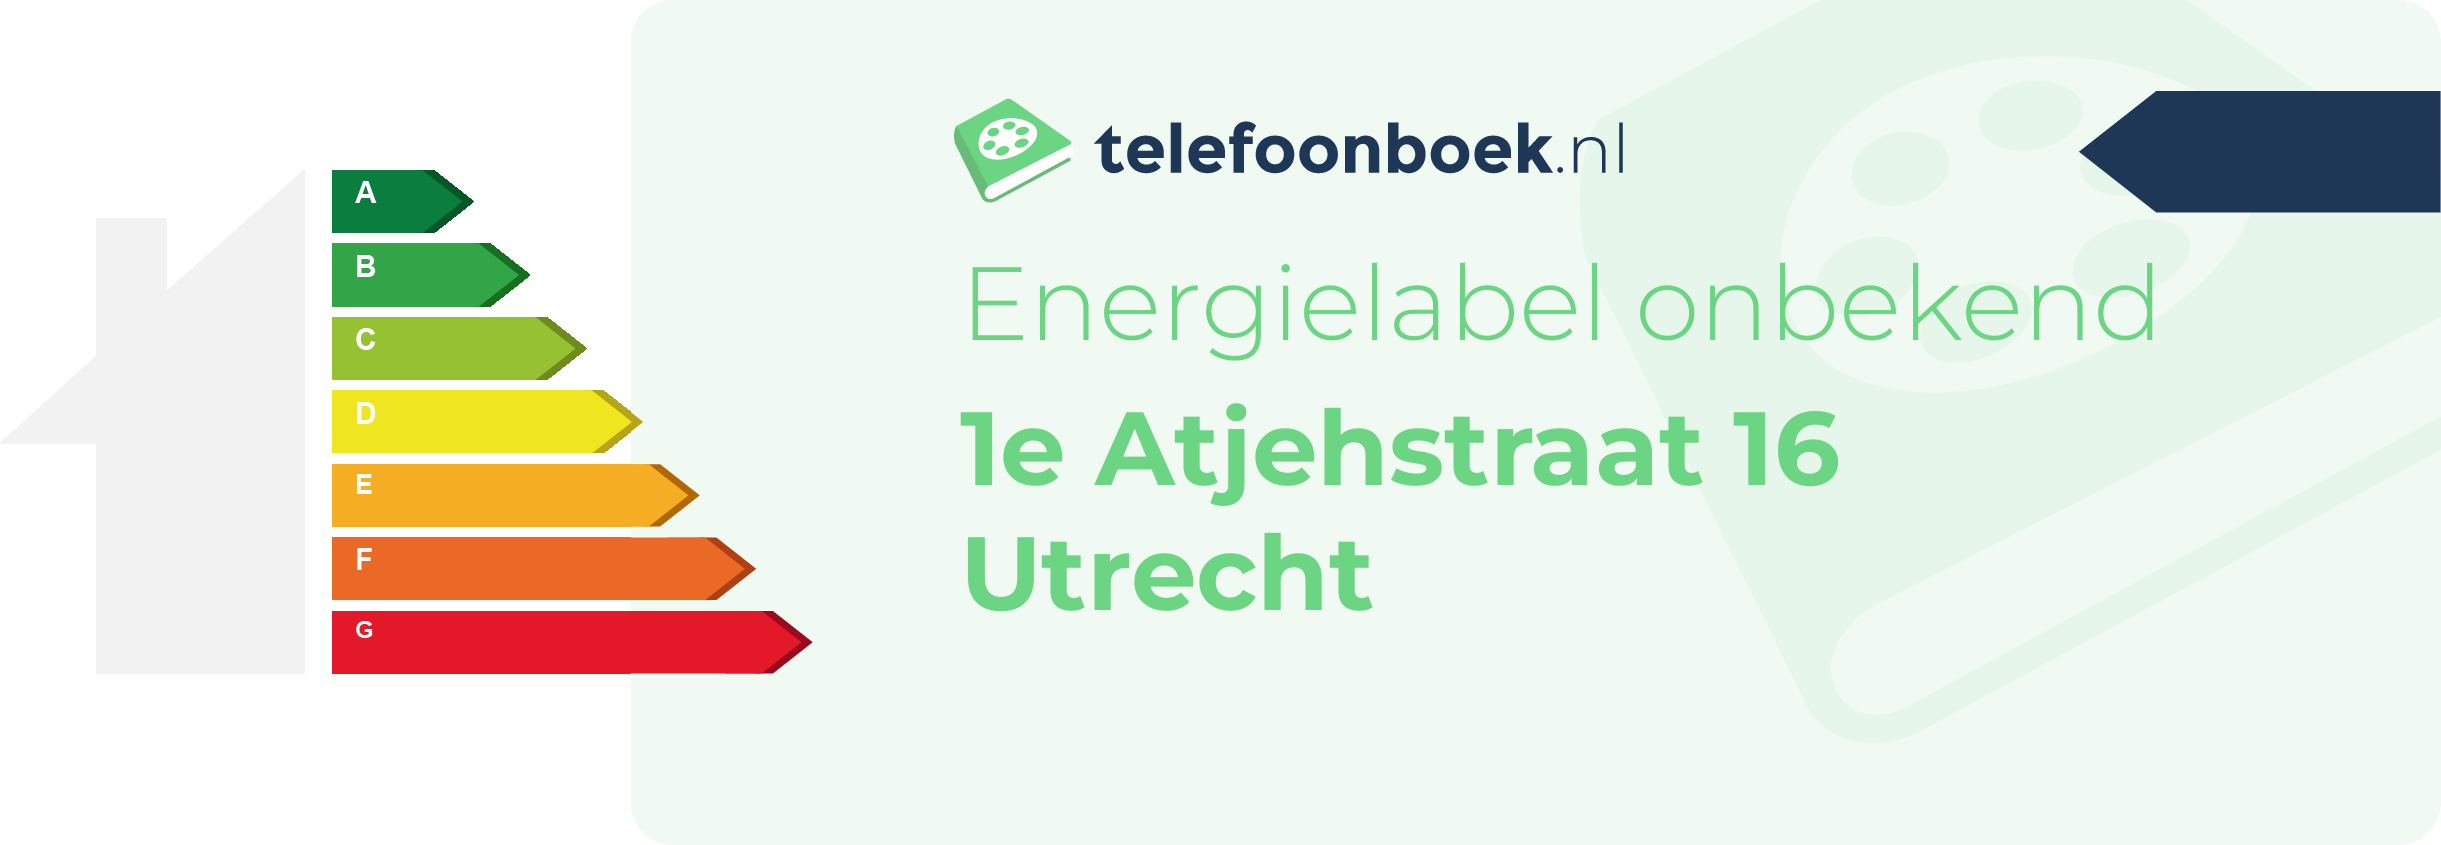 Energielabel 1e Atjehstraat 16 Utrecht